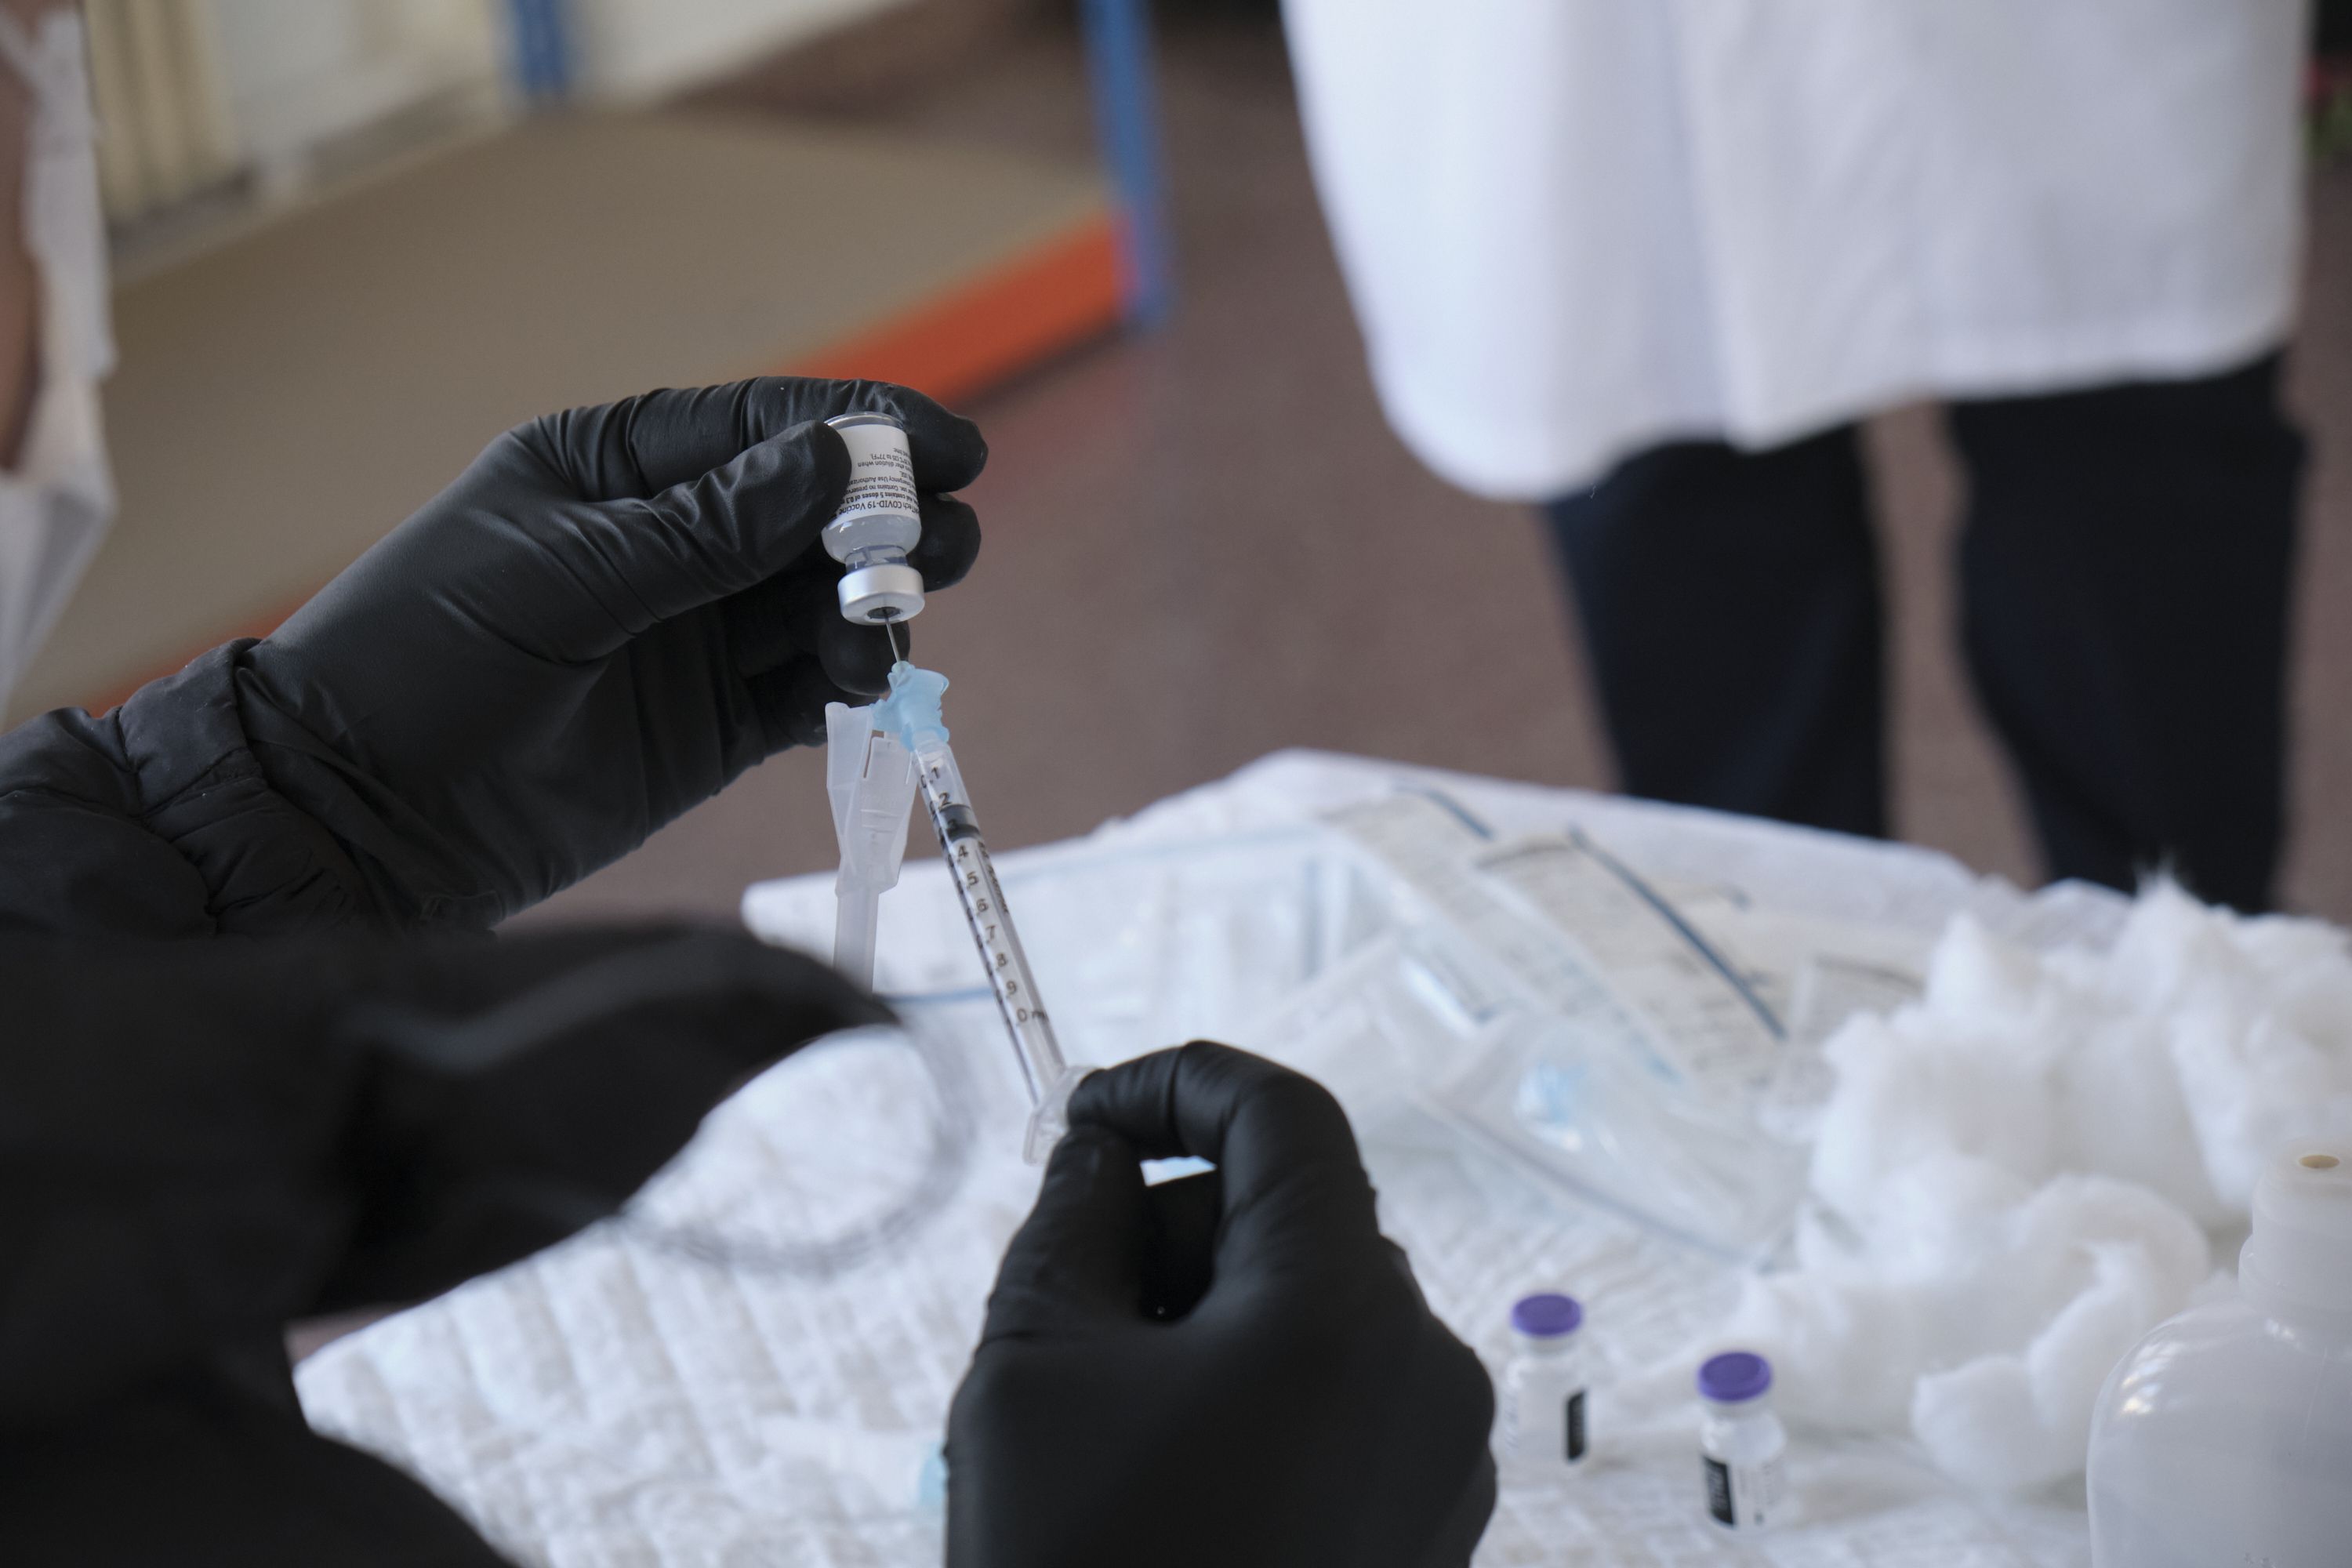 Dos residencias registran nuevos brotes de Covid-19 tras administrar la segunda dosis de la vacuna